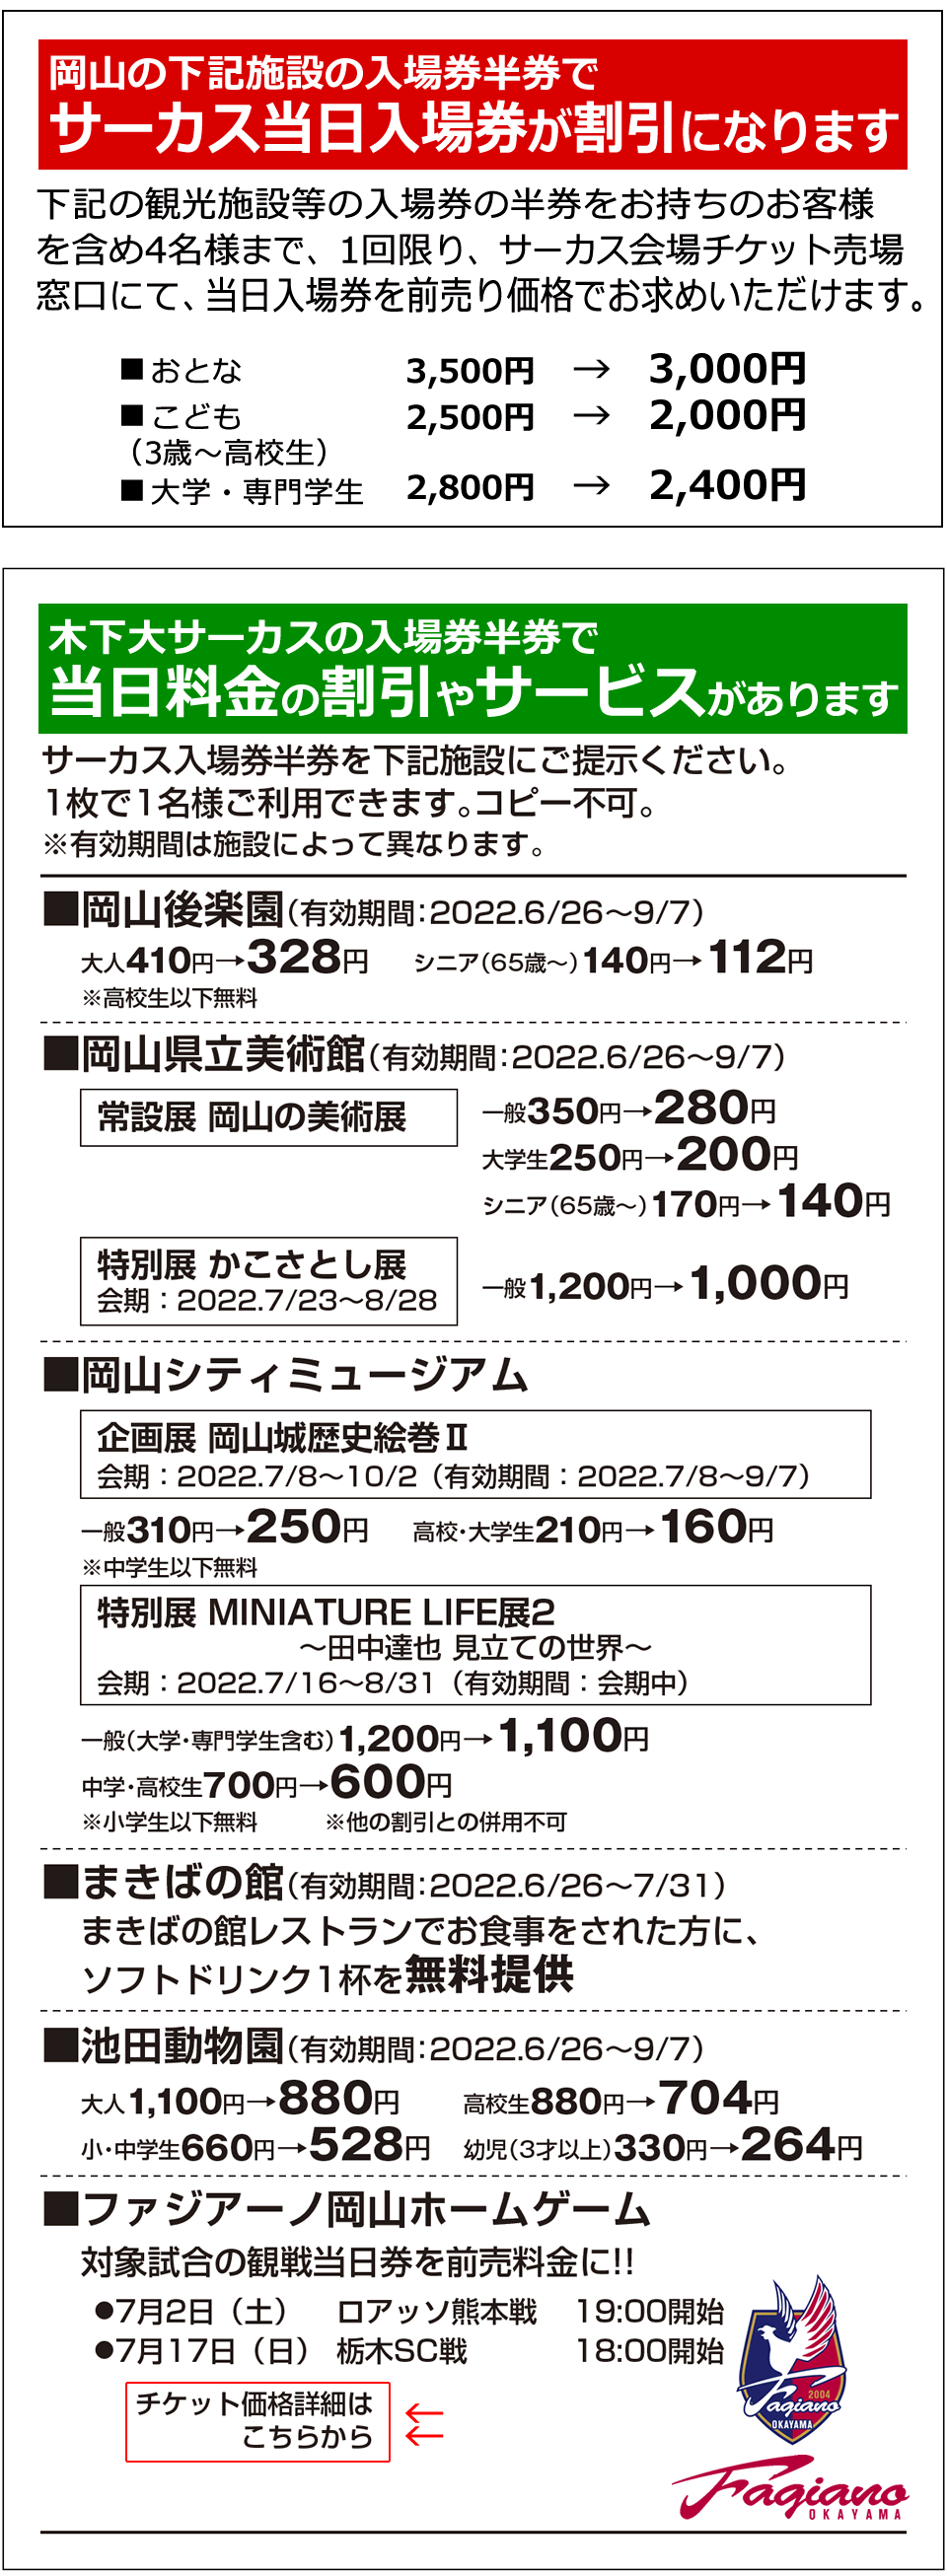 岡山の様々な観光施設との相互割引情報